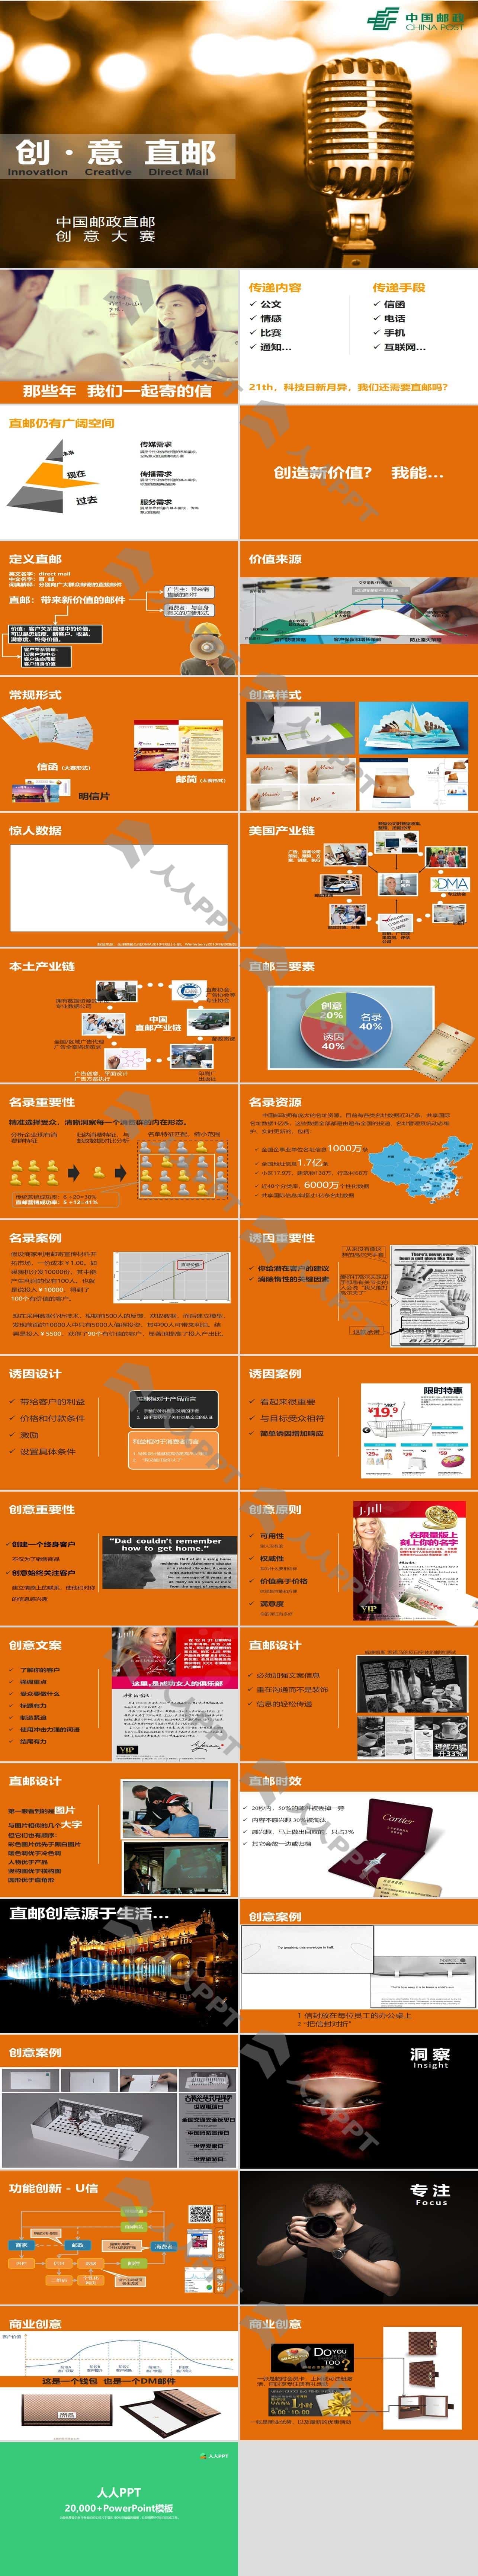 中国邮政“直邮”创意大赛PPT模板长图